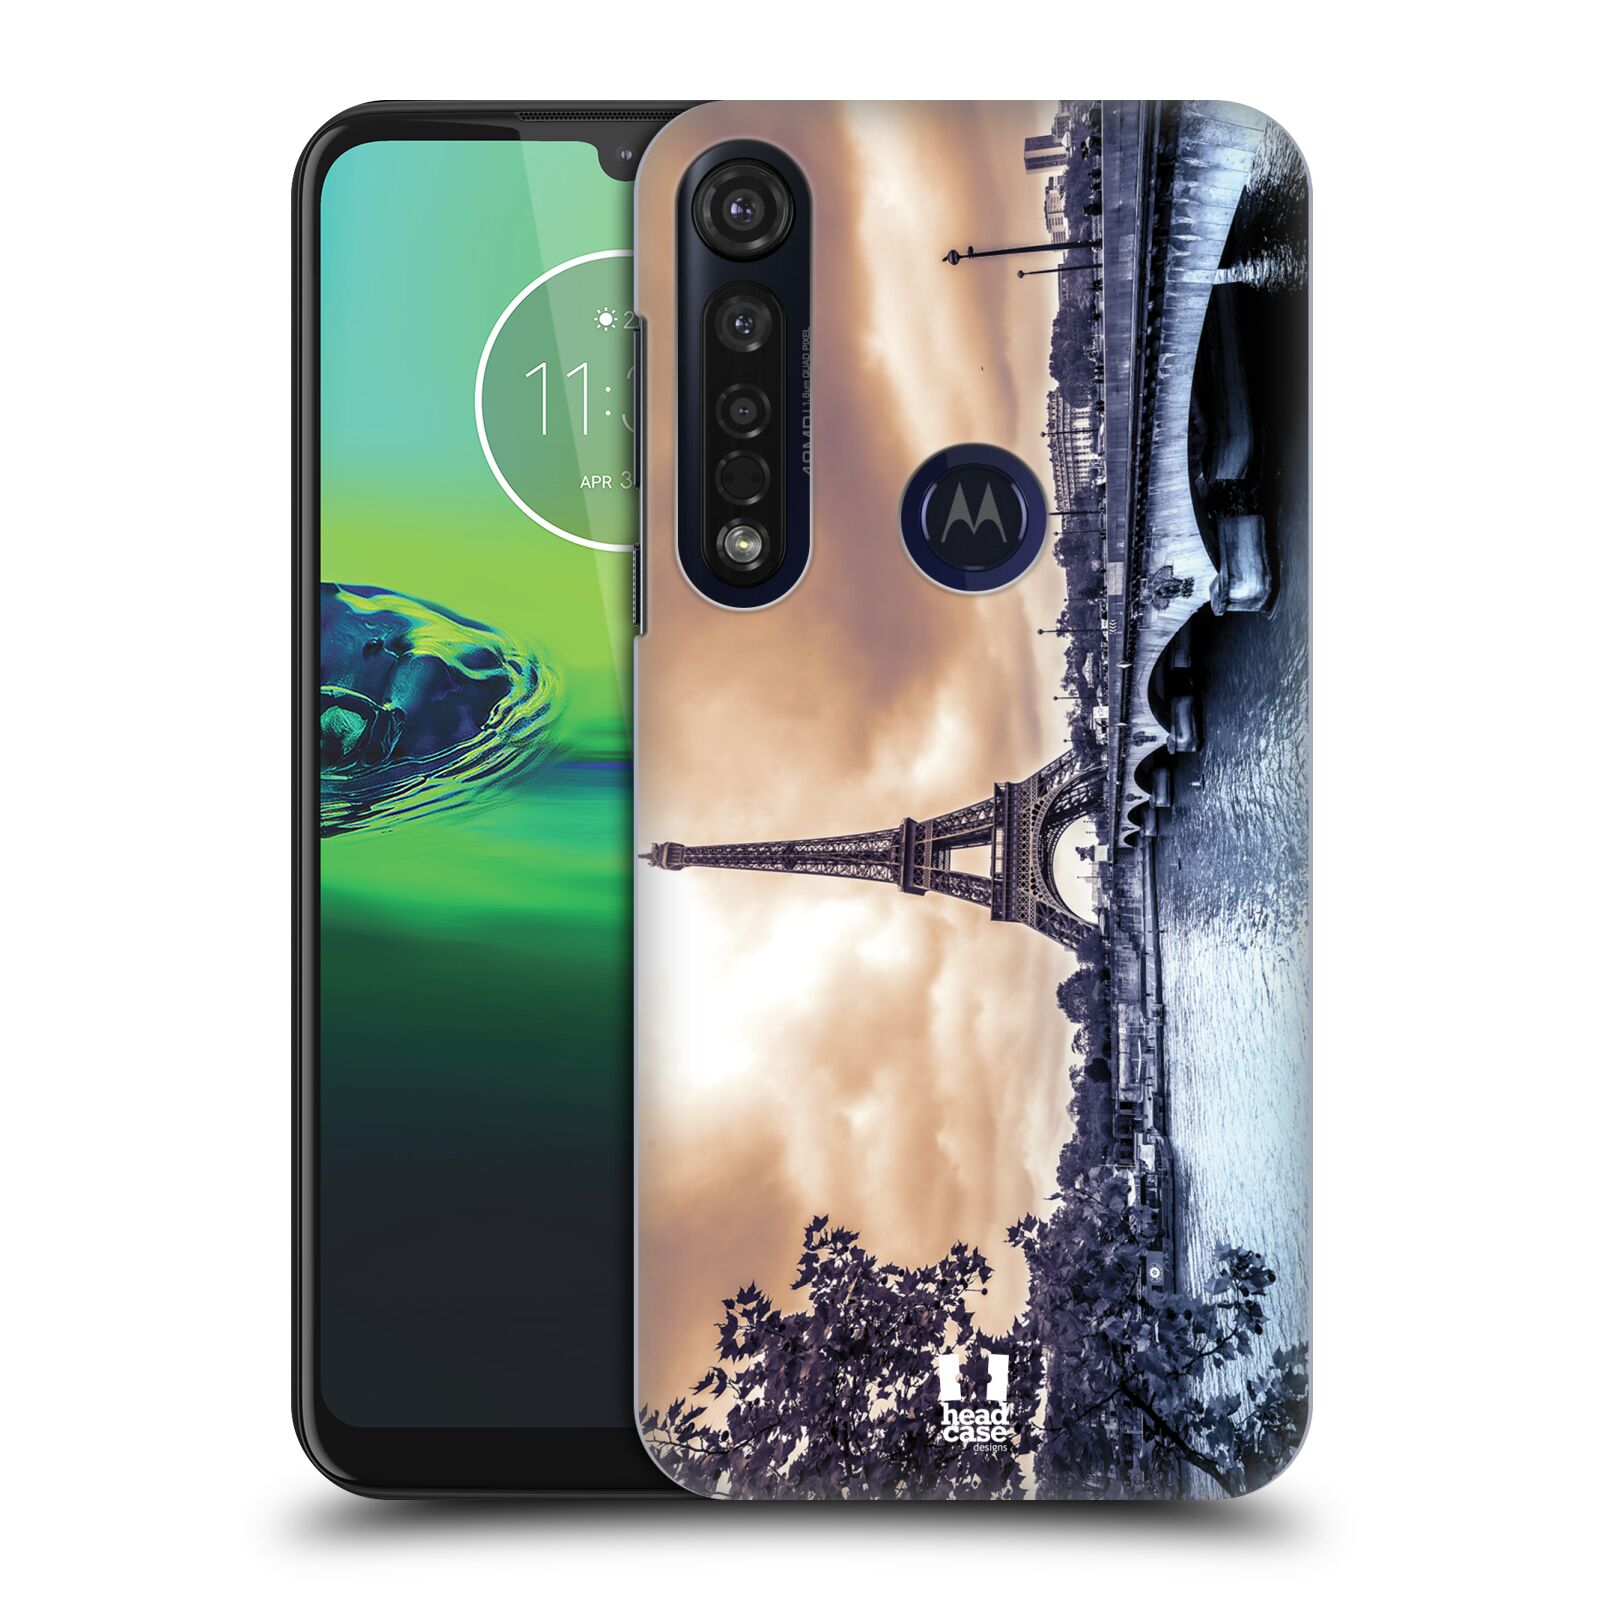 Pouzdro na mobil Motorola Moto G8 PLUS - HEAD CASE - vzor Panoramata měst horizontální foto DEŠTIVÝ DEN V PAŘÍŽI, FRANCIE